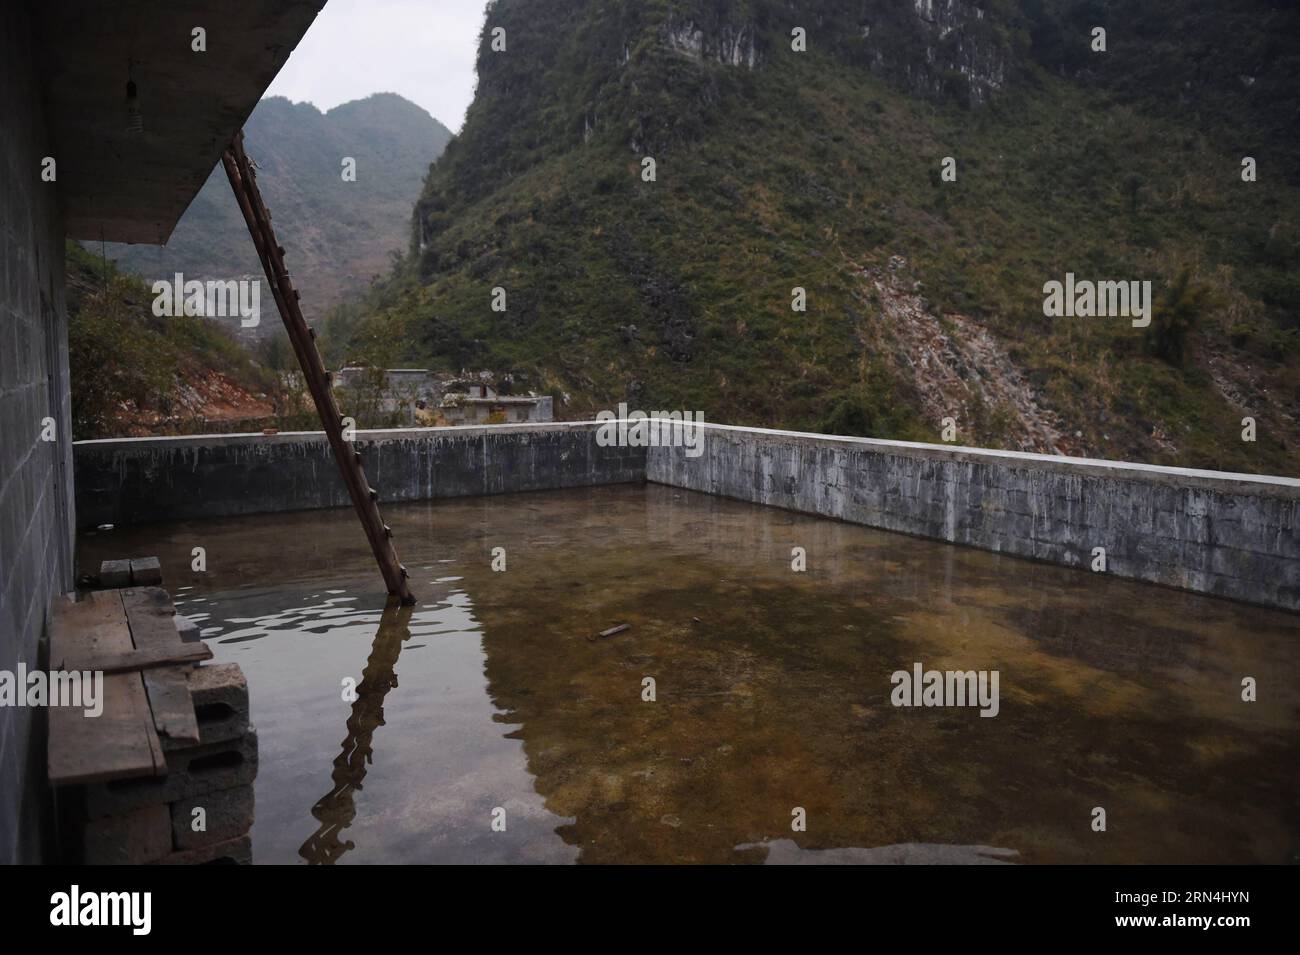 Regenwasser wird auf dem Dach eines Hauses im Dorf Nongyong der Gemeinde Bansheng im Autonomen Komitat Dahua Yao im Südwesten Chinas Guangxi Zhuang am 17. Februar 2015 gesammelt. Die Bansheng Township liegt im Zentrum der Karst-Landformen im Westen von Guangxi und leidet seit Ewigkeiten unter einem starken Wassermangel. Die Niederschläge sind daher ein Segen für die Menschen, die seit etwa 1.000 Jahren auf diesem Land leben und hauptsächlich der ethnischen Gruppe der Yao angehören. Um ihren täglichen Lebensbedürfnissen gerecht zu werden, sammeln die Einheimischen immer Regenwasser mit Eimern und Fässern jeder Größe sowie mit Dächern ihrer Häuser. Im vergangenen dez. Stockfoto